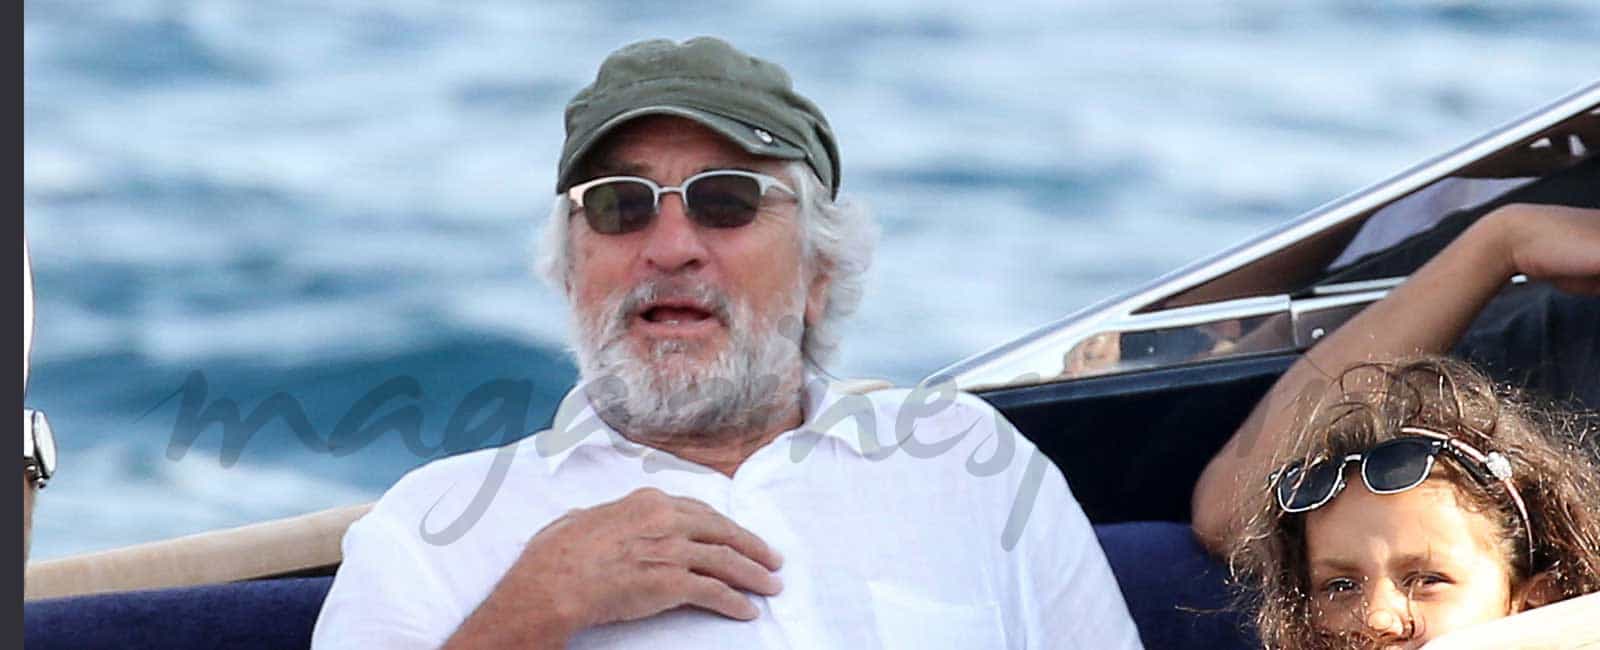 Robert de Niro celebra su 73 cumpleaños en el mar